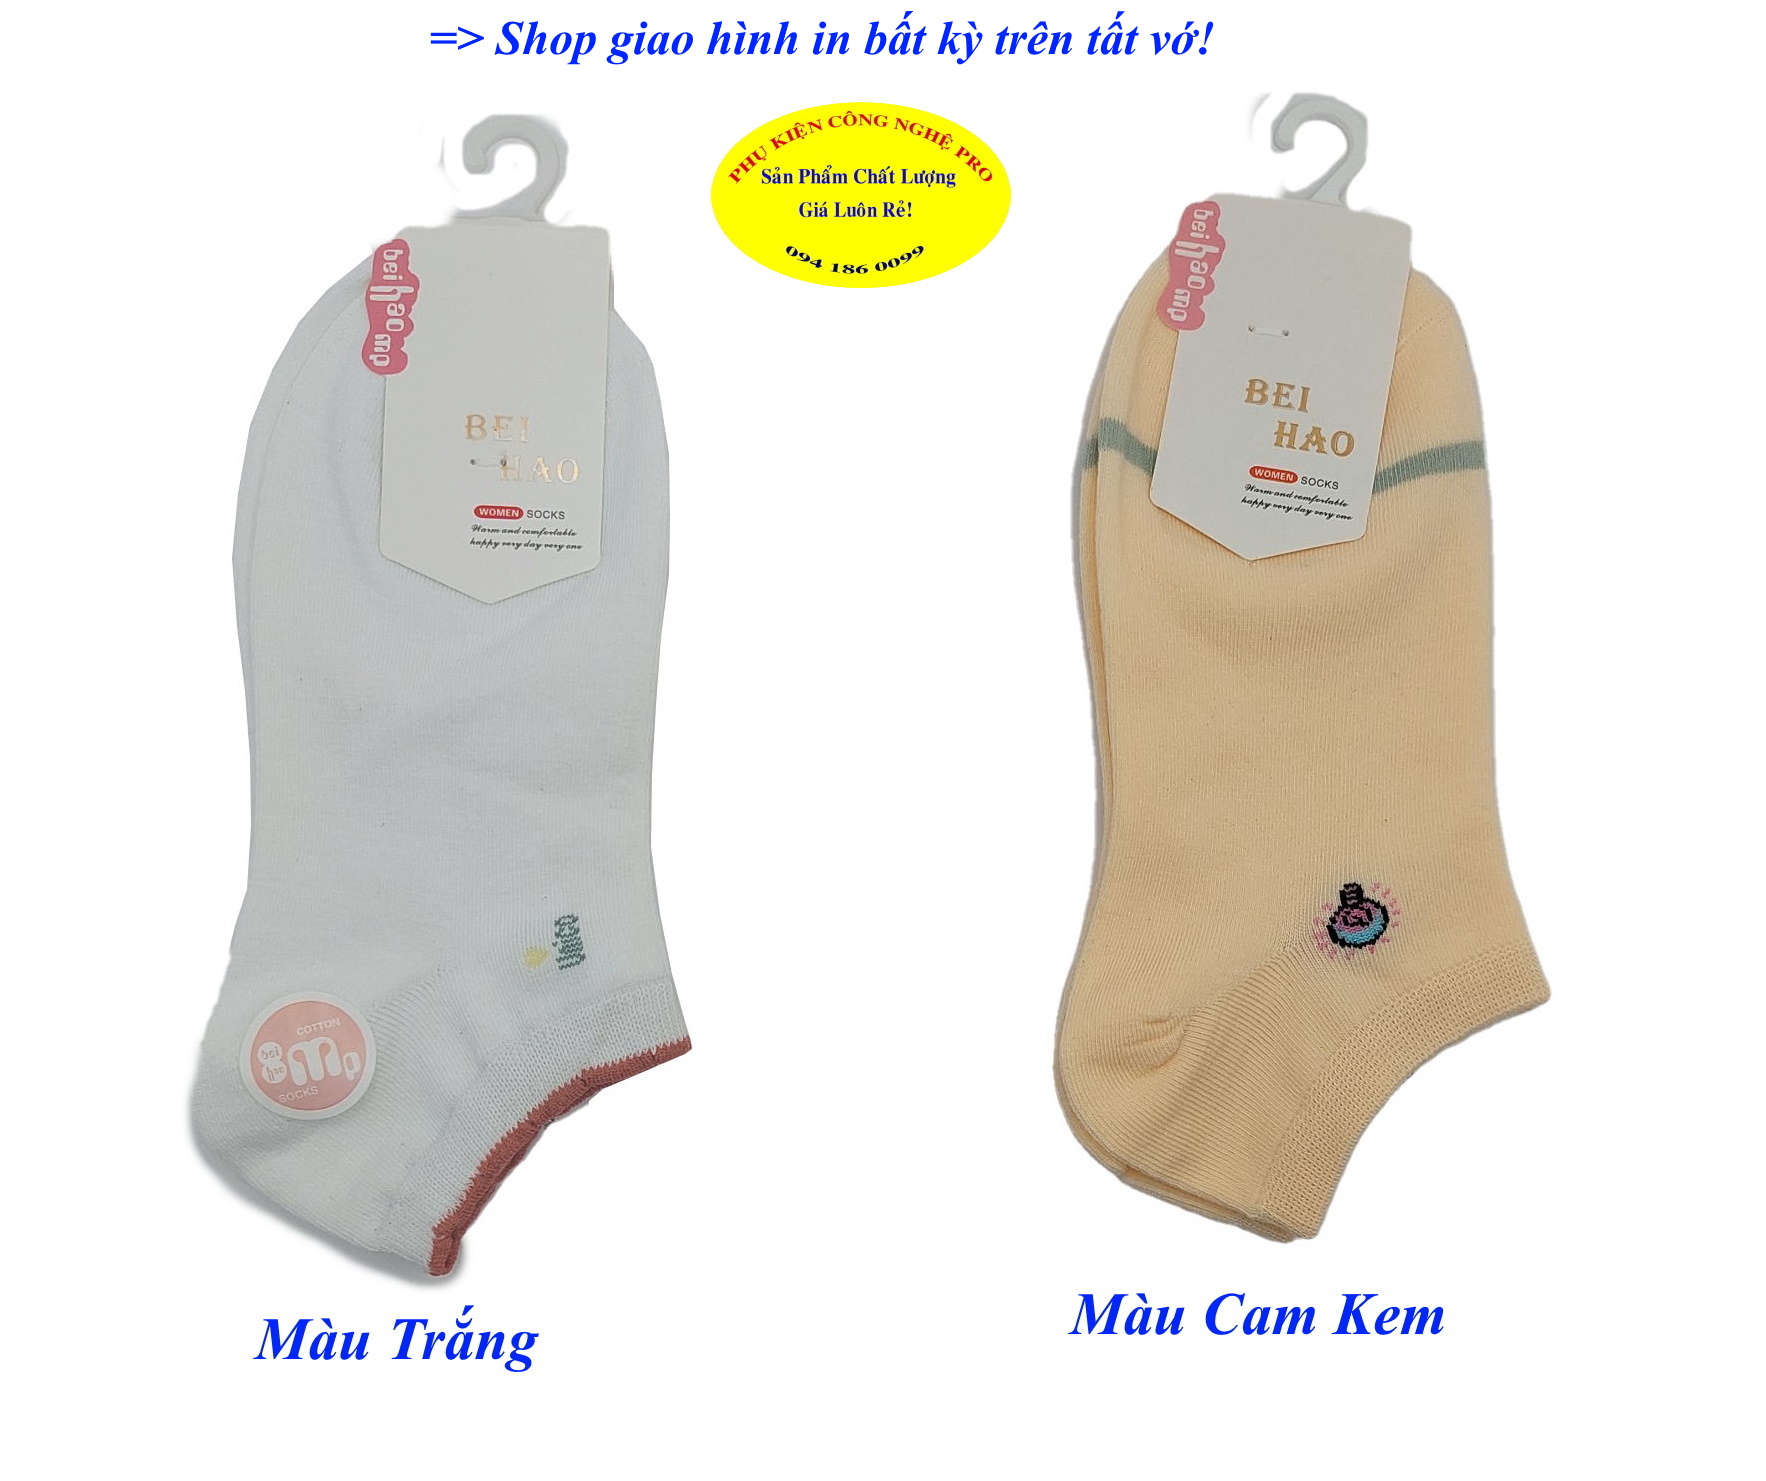 Tất vớ nữ Kiểu cổ ngắn Beihao Women Socks In hình bất kỳ Chất liệu cotton co giãn, Mềm mại, Bảo vệ đôi chân